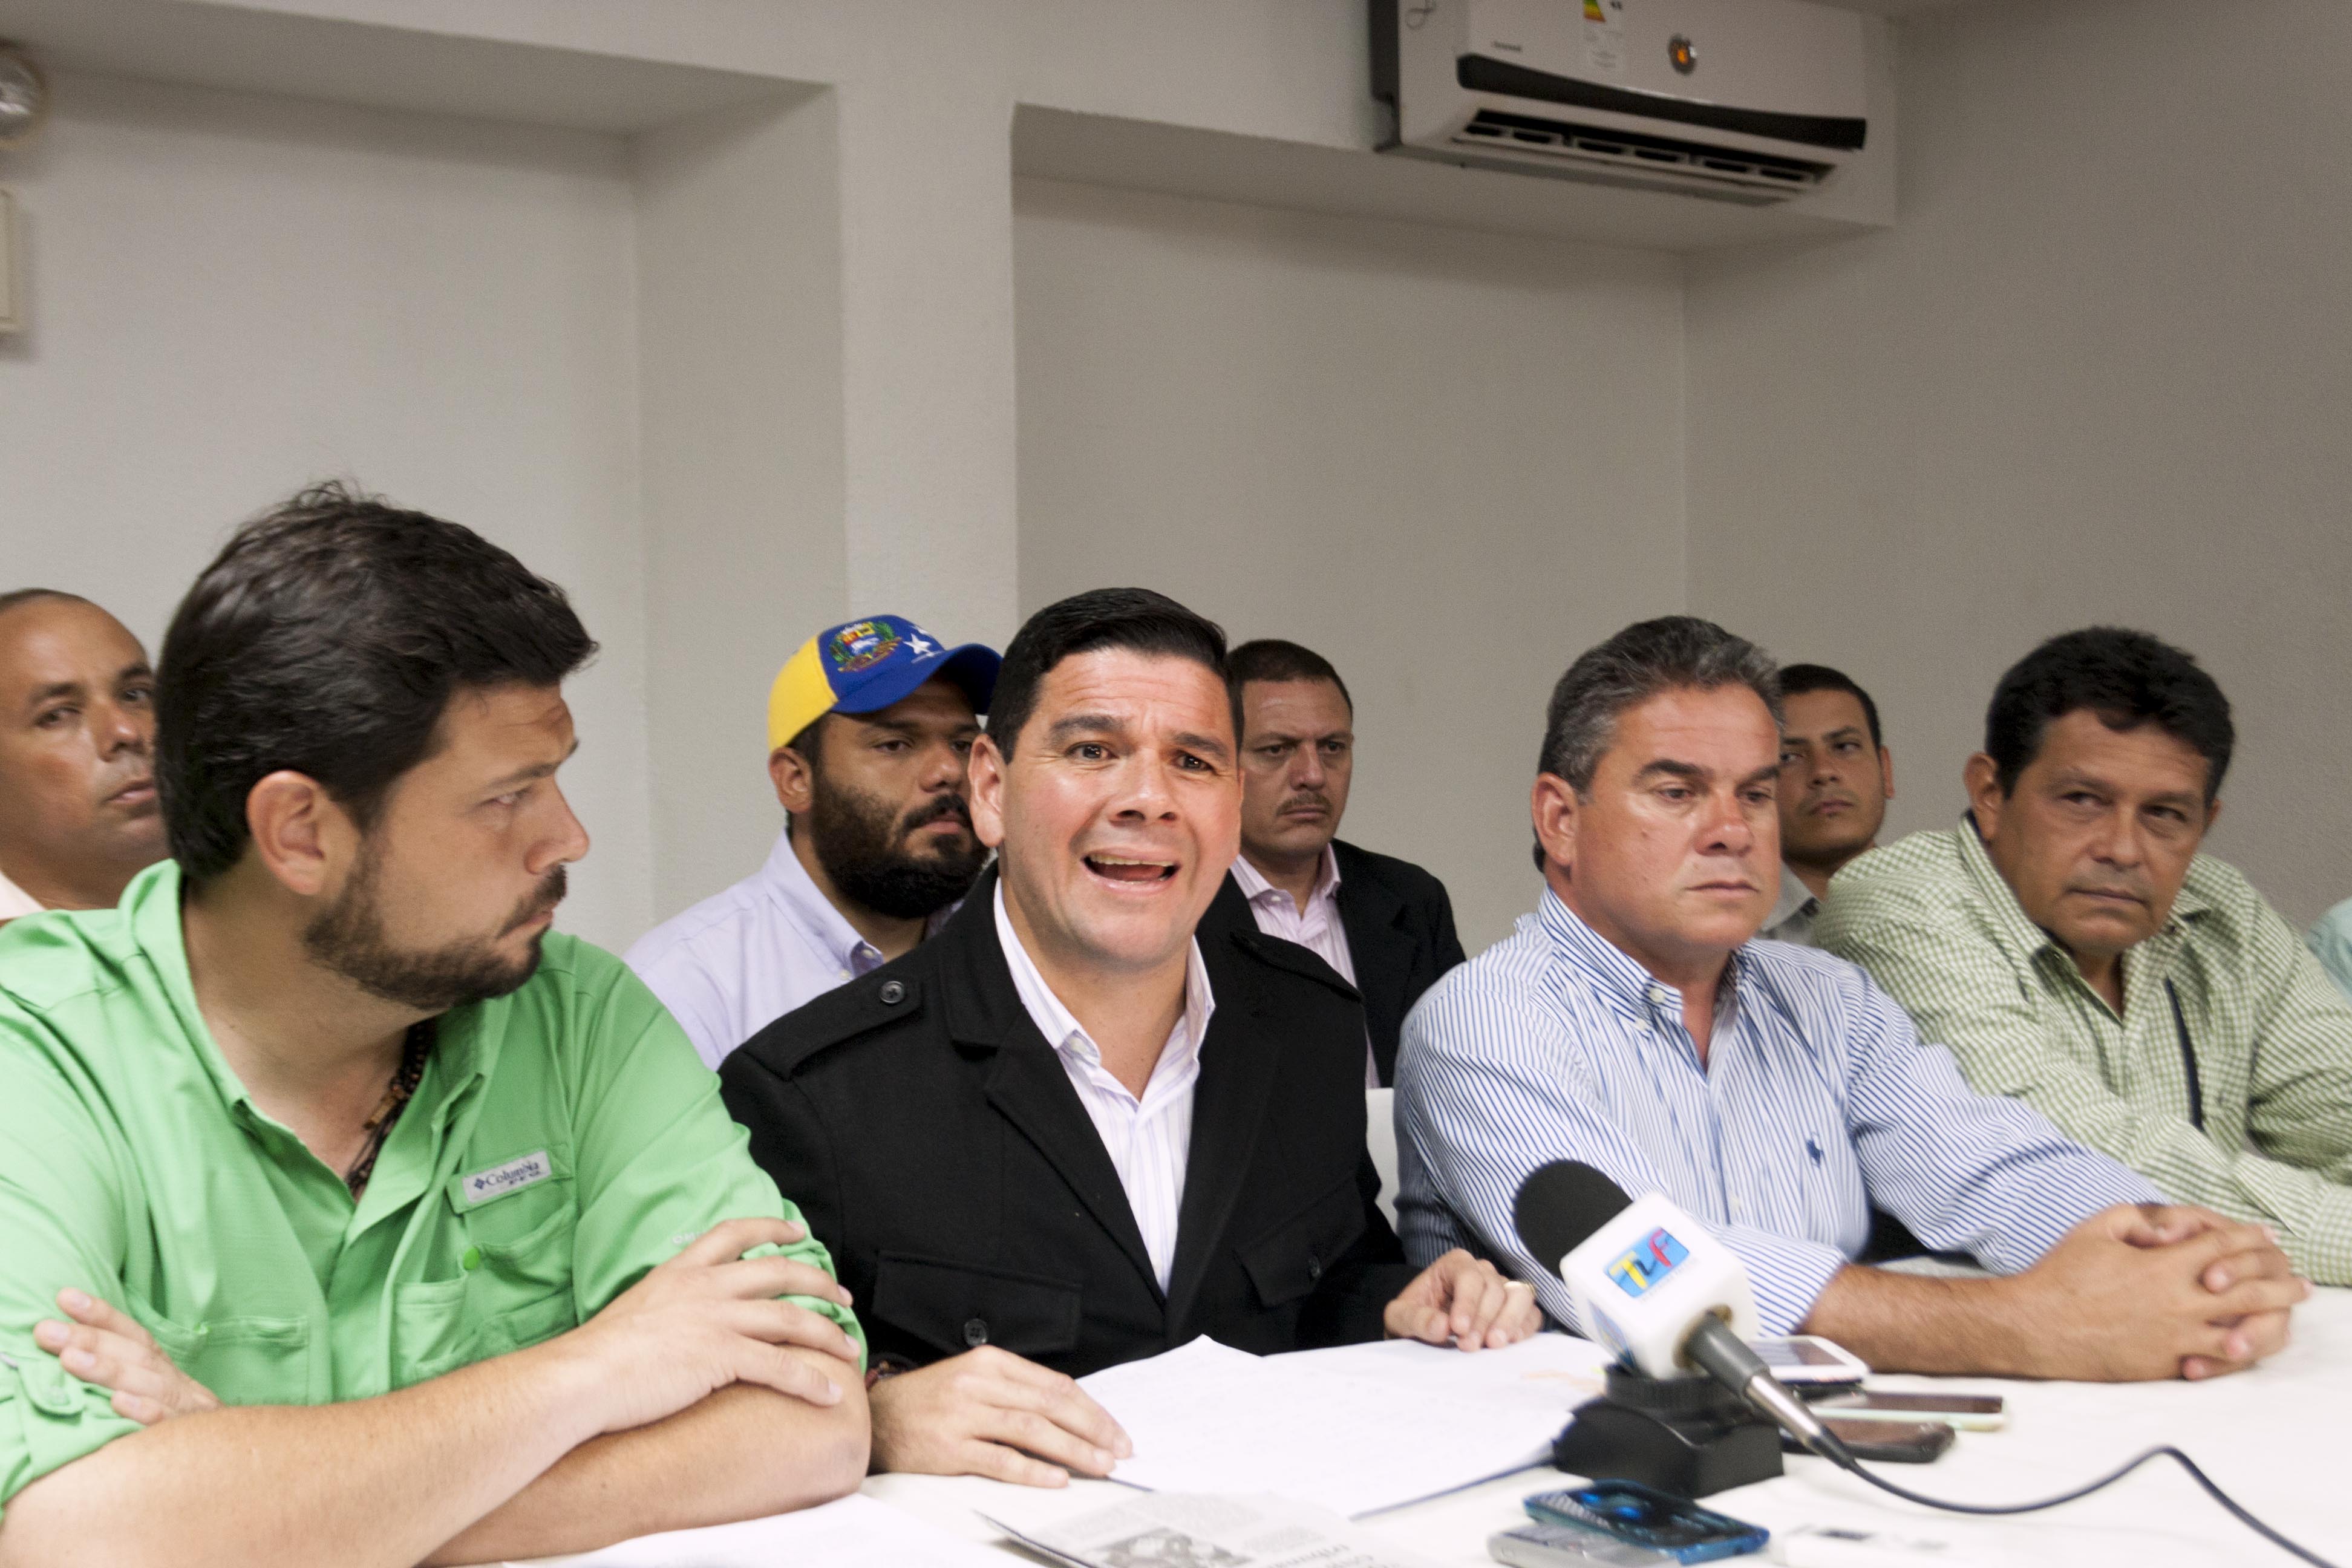 Salvador Guarecuco: Vamos a solicitar un avocamiento en el caso de los estudiantes